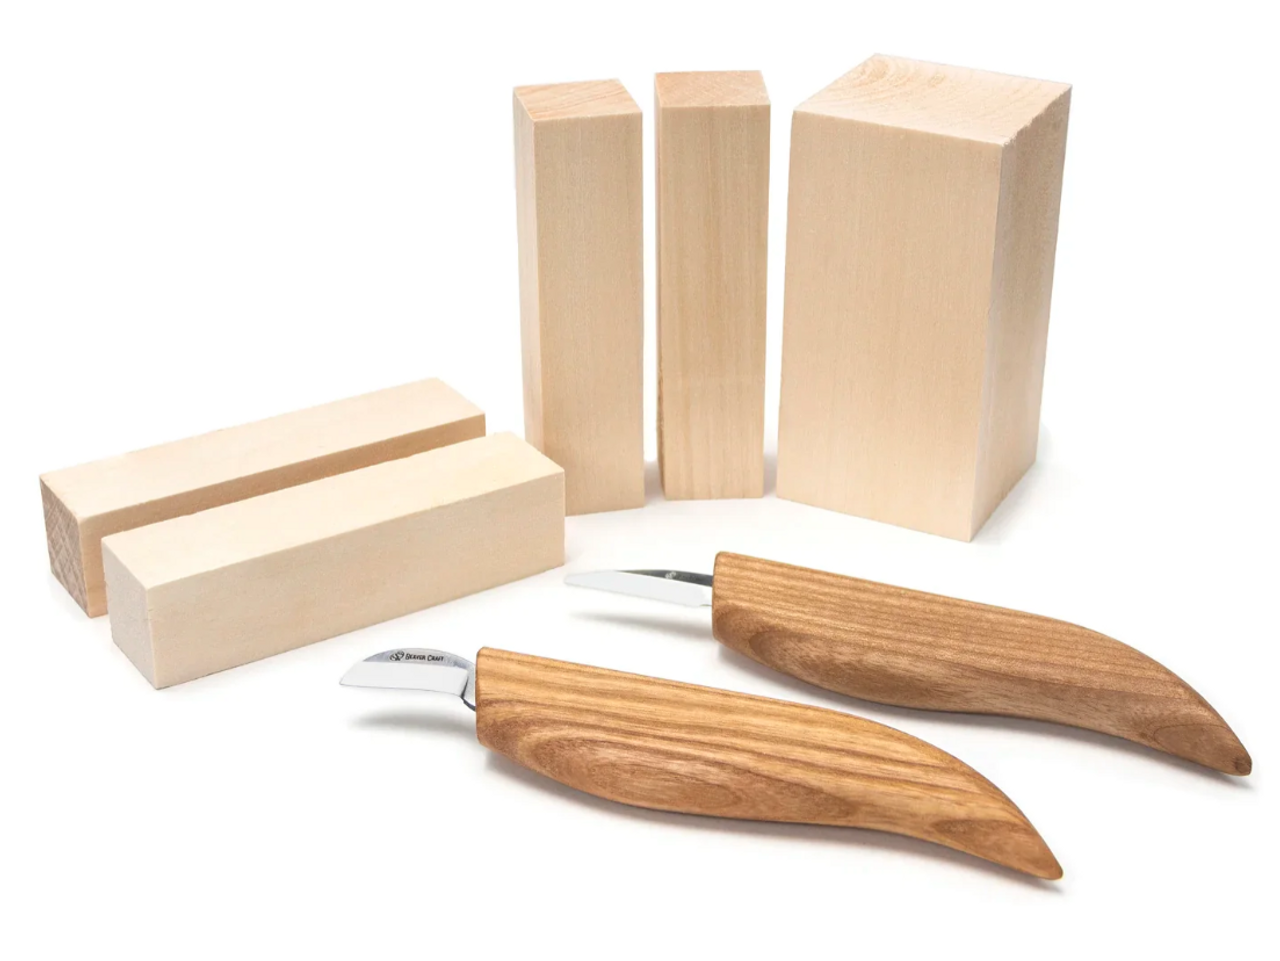 BeaverCraft S16 - Whittling Wood Knives Kit